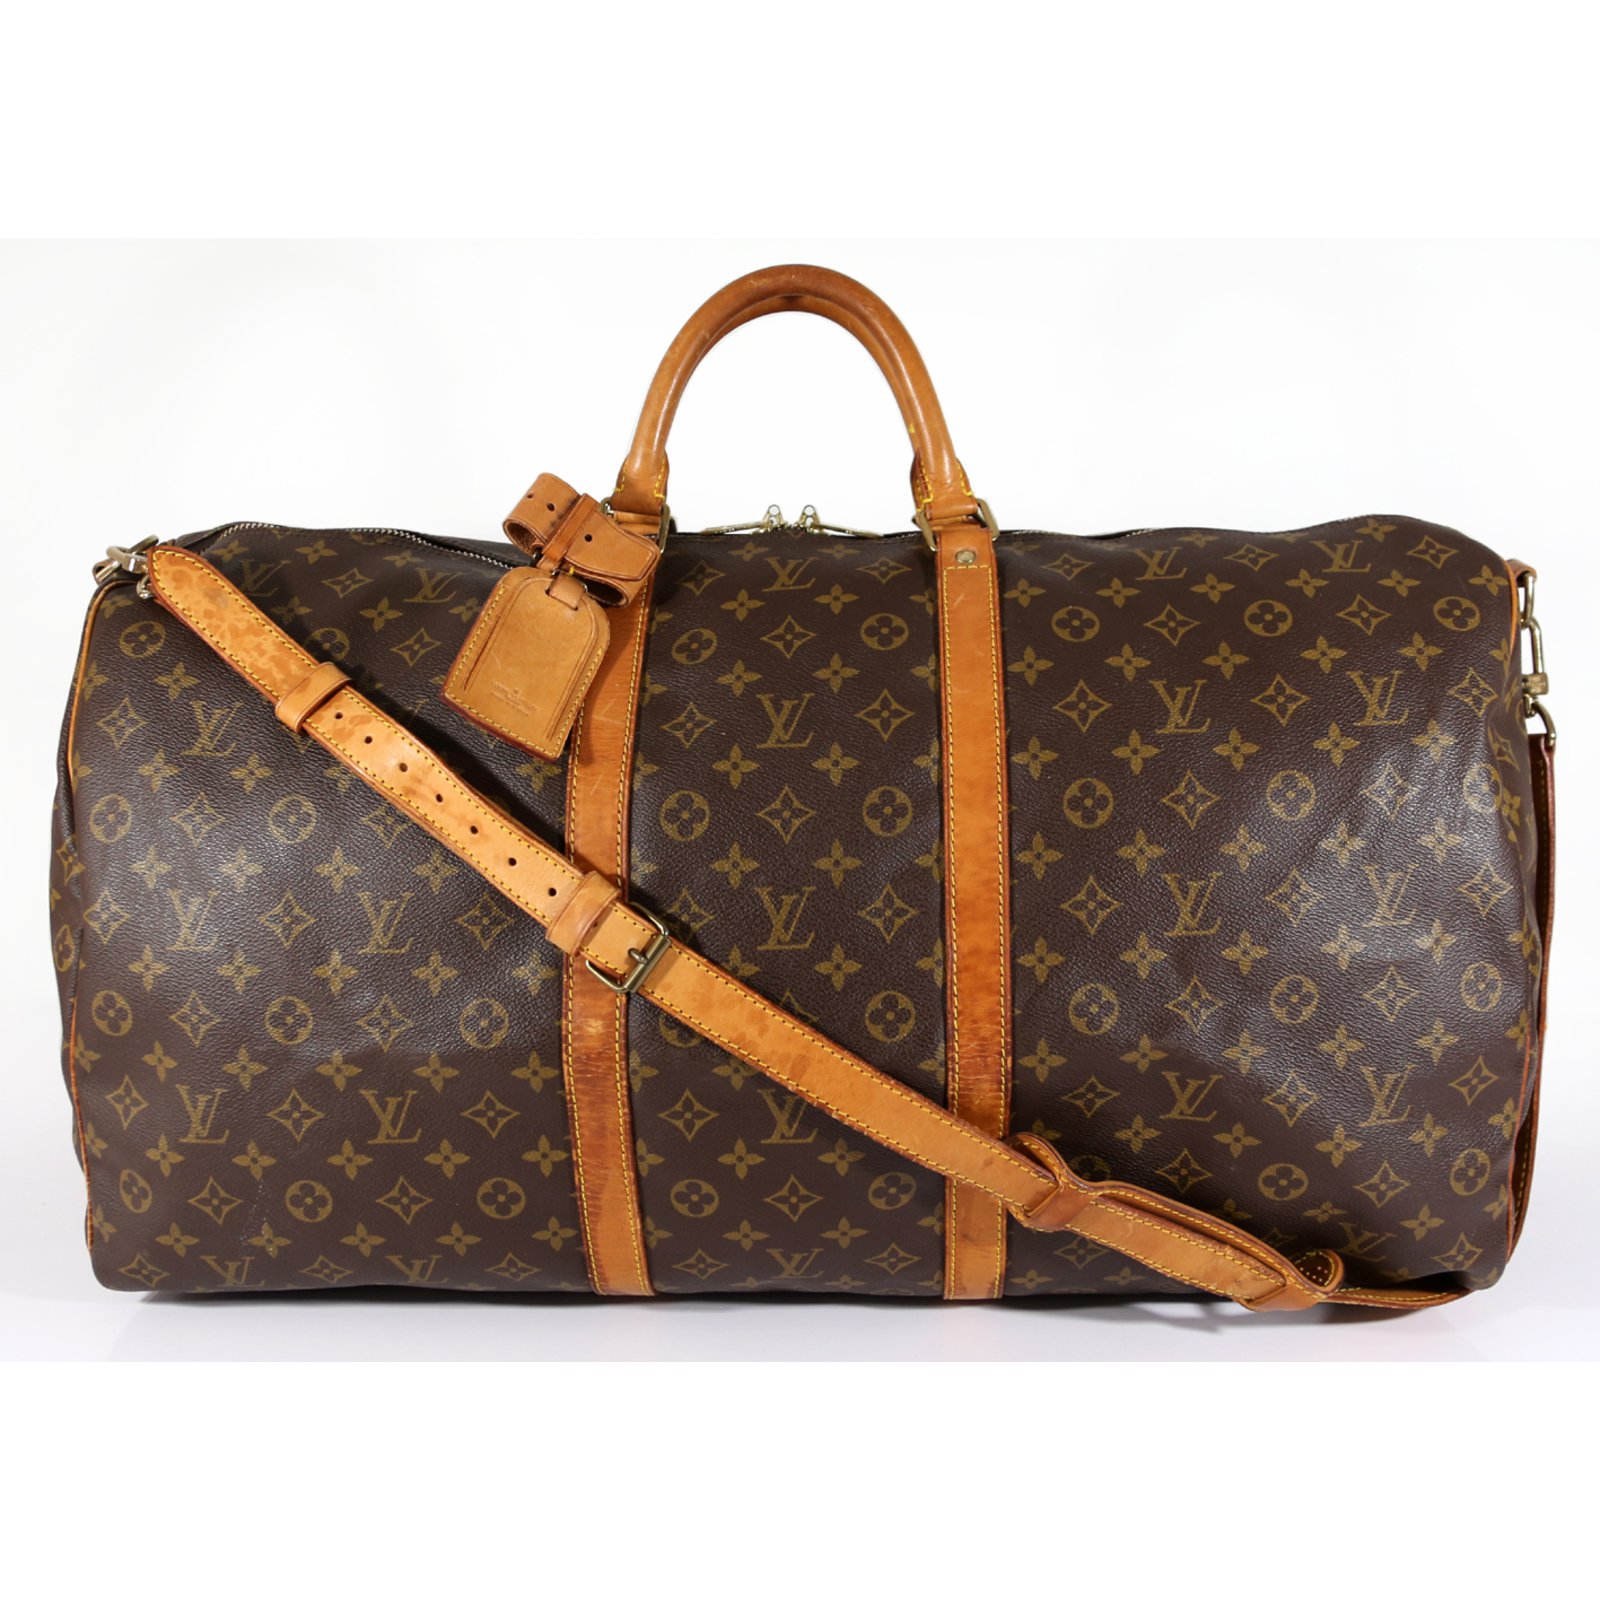 Best Louis Vuitton Handbag For Travel Neverfull Bag